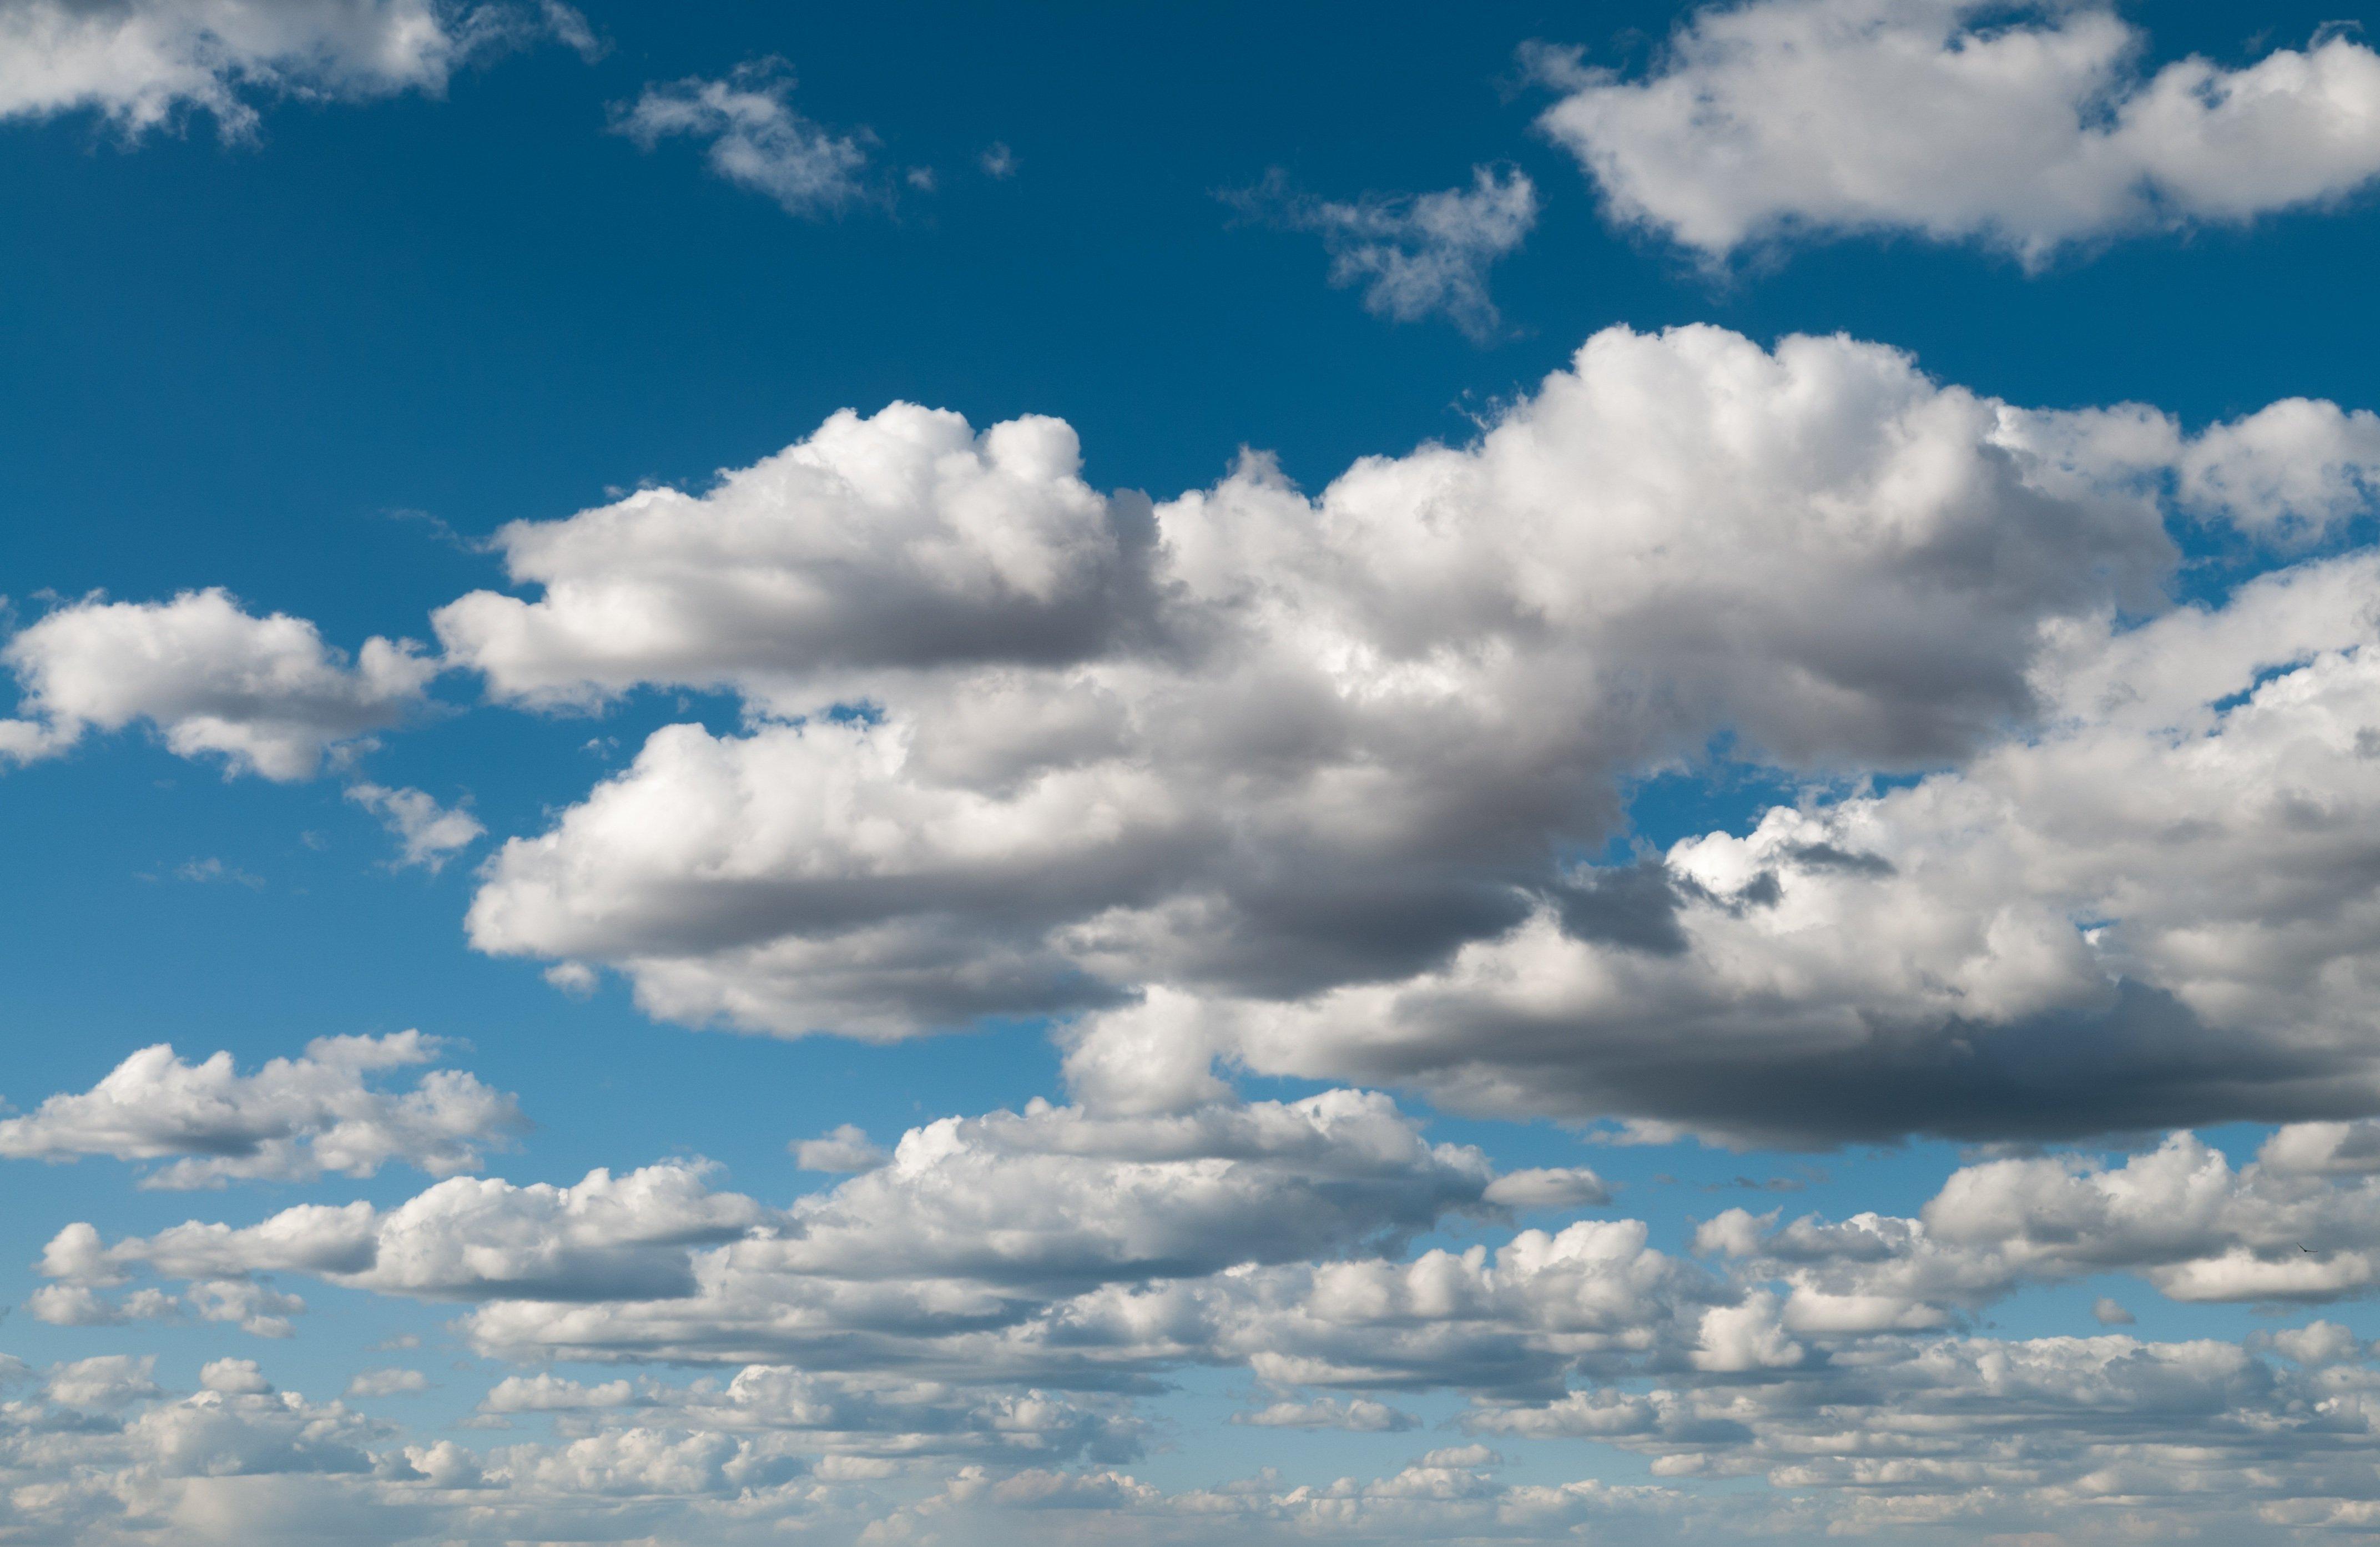 много облаков показано на изображении голубого неба, облако кучевые  слоистое голубое небо обычное небо и облака белые облака осеннее небо  справочный материал облако голубое небо синтетический фон, Hd фотография  фото, облако фон